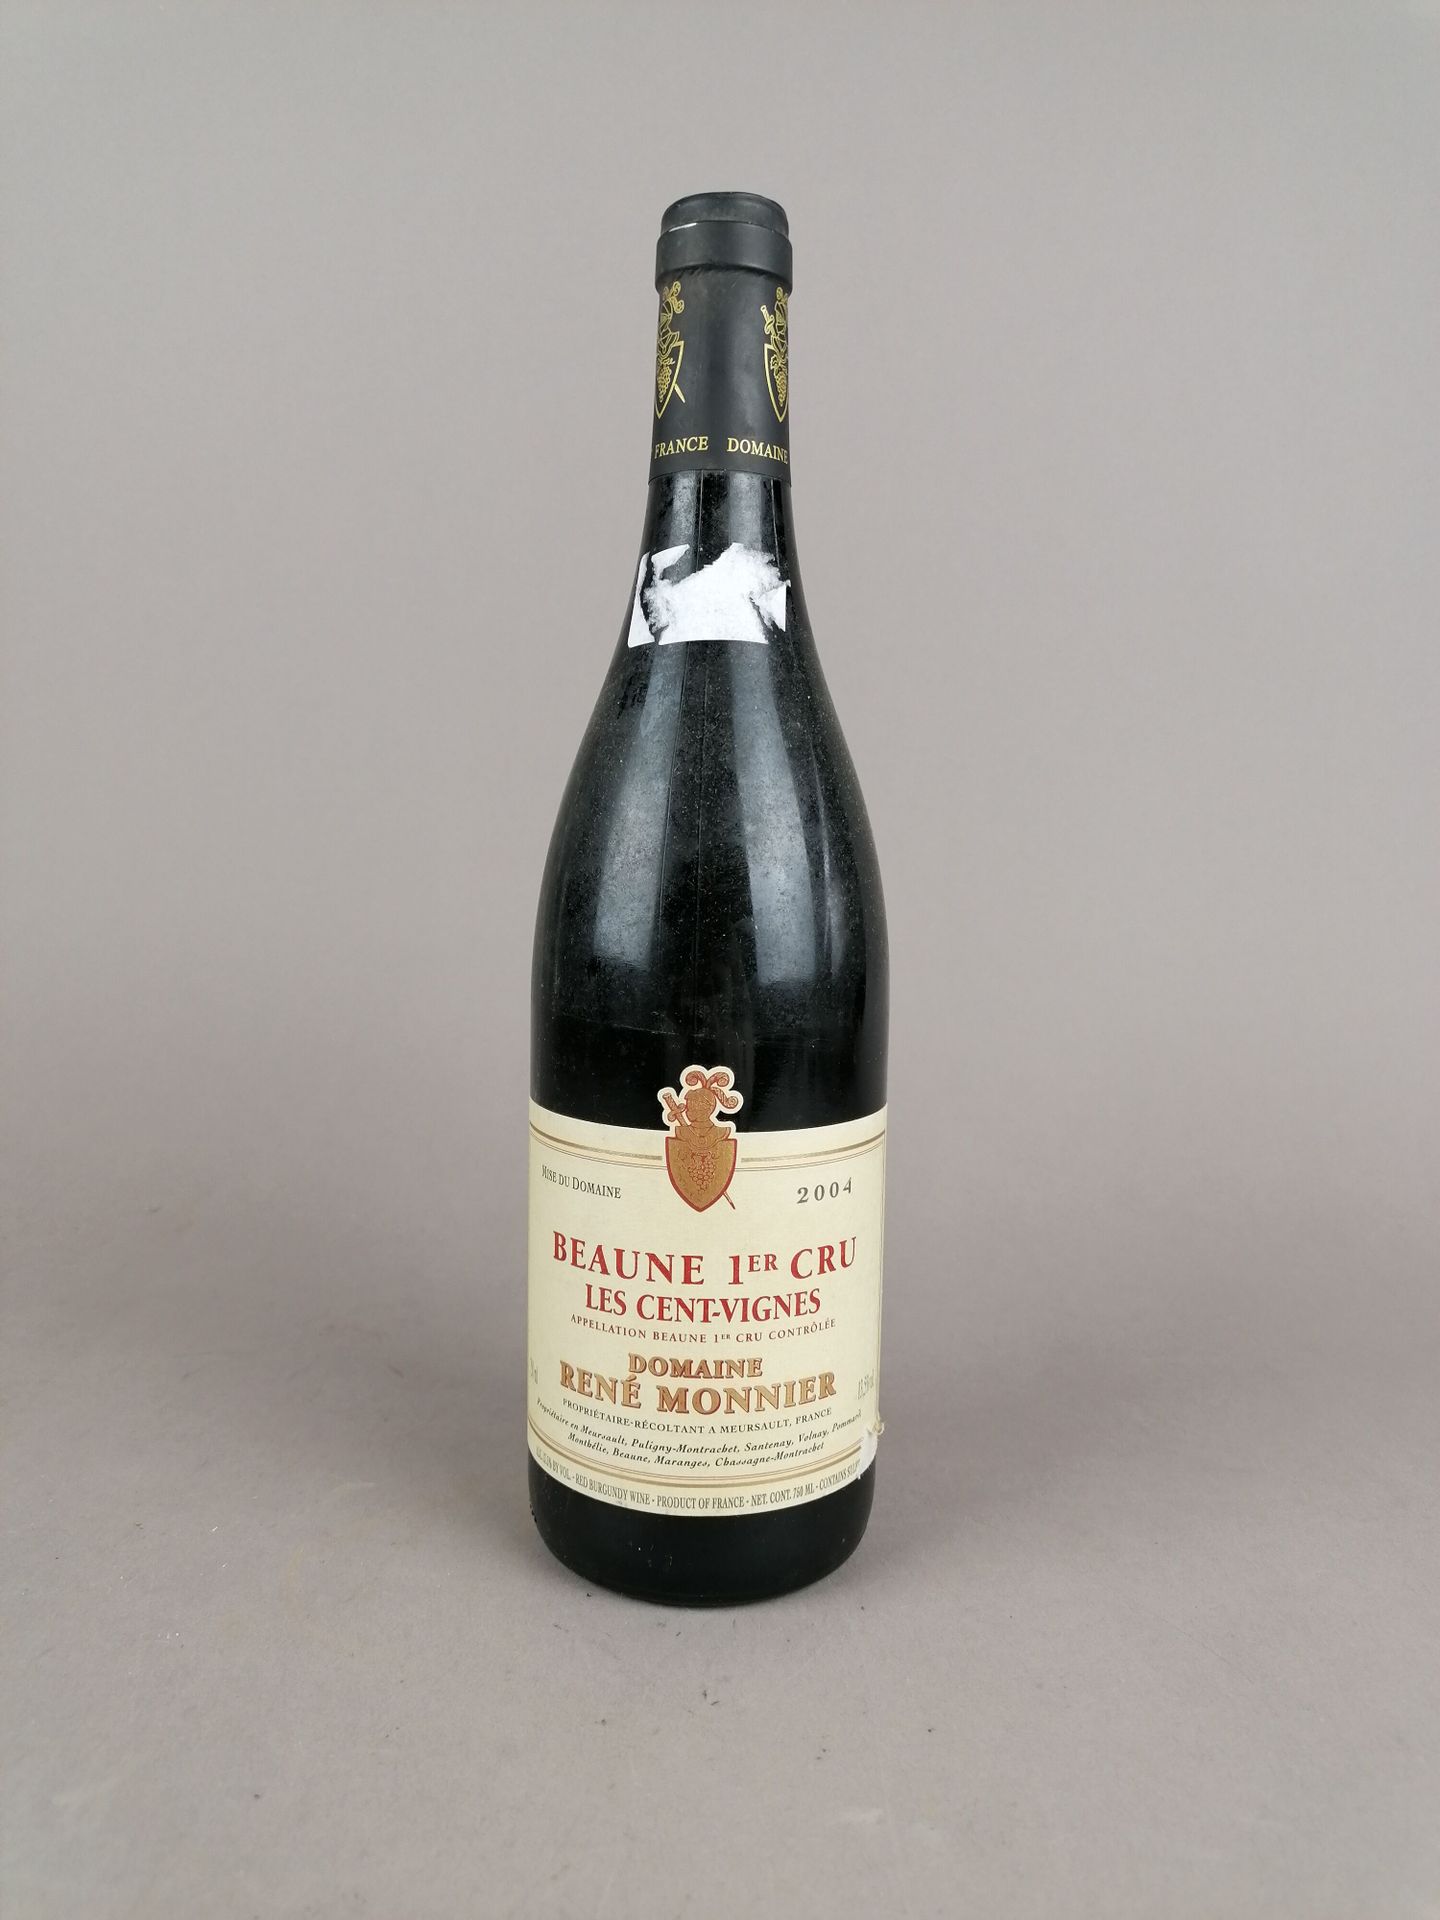 Null 1 bottle of Beaune 1er Cru Les Cent-Vignes 2004 Domaine René Monnier